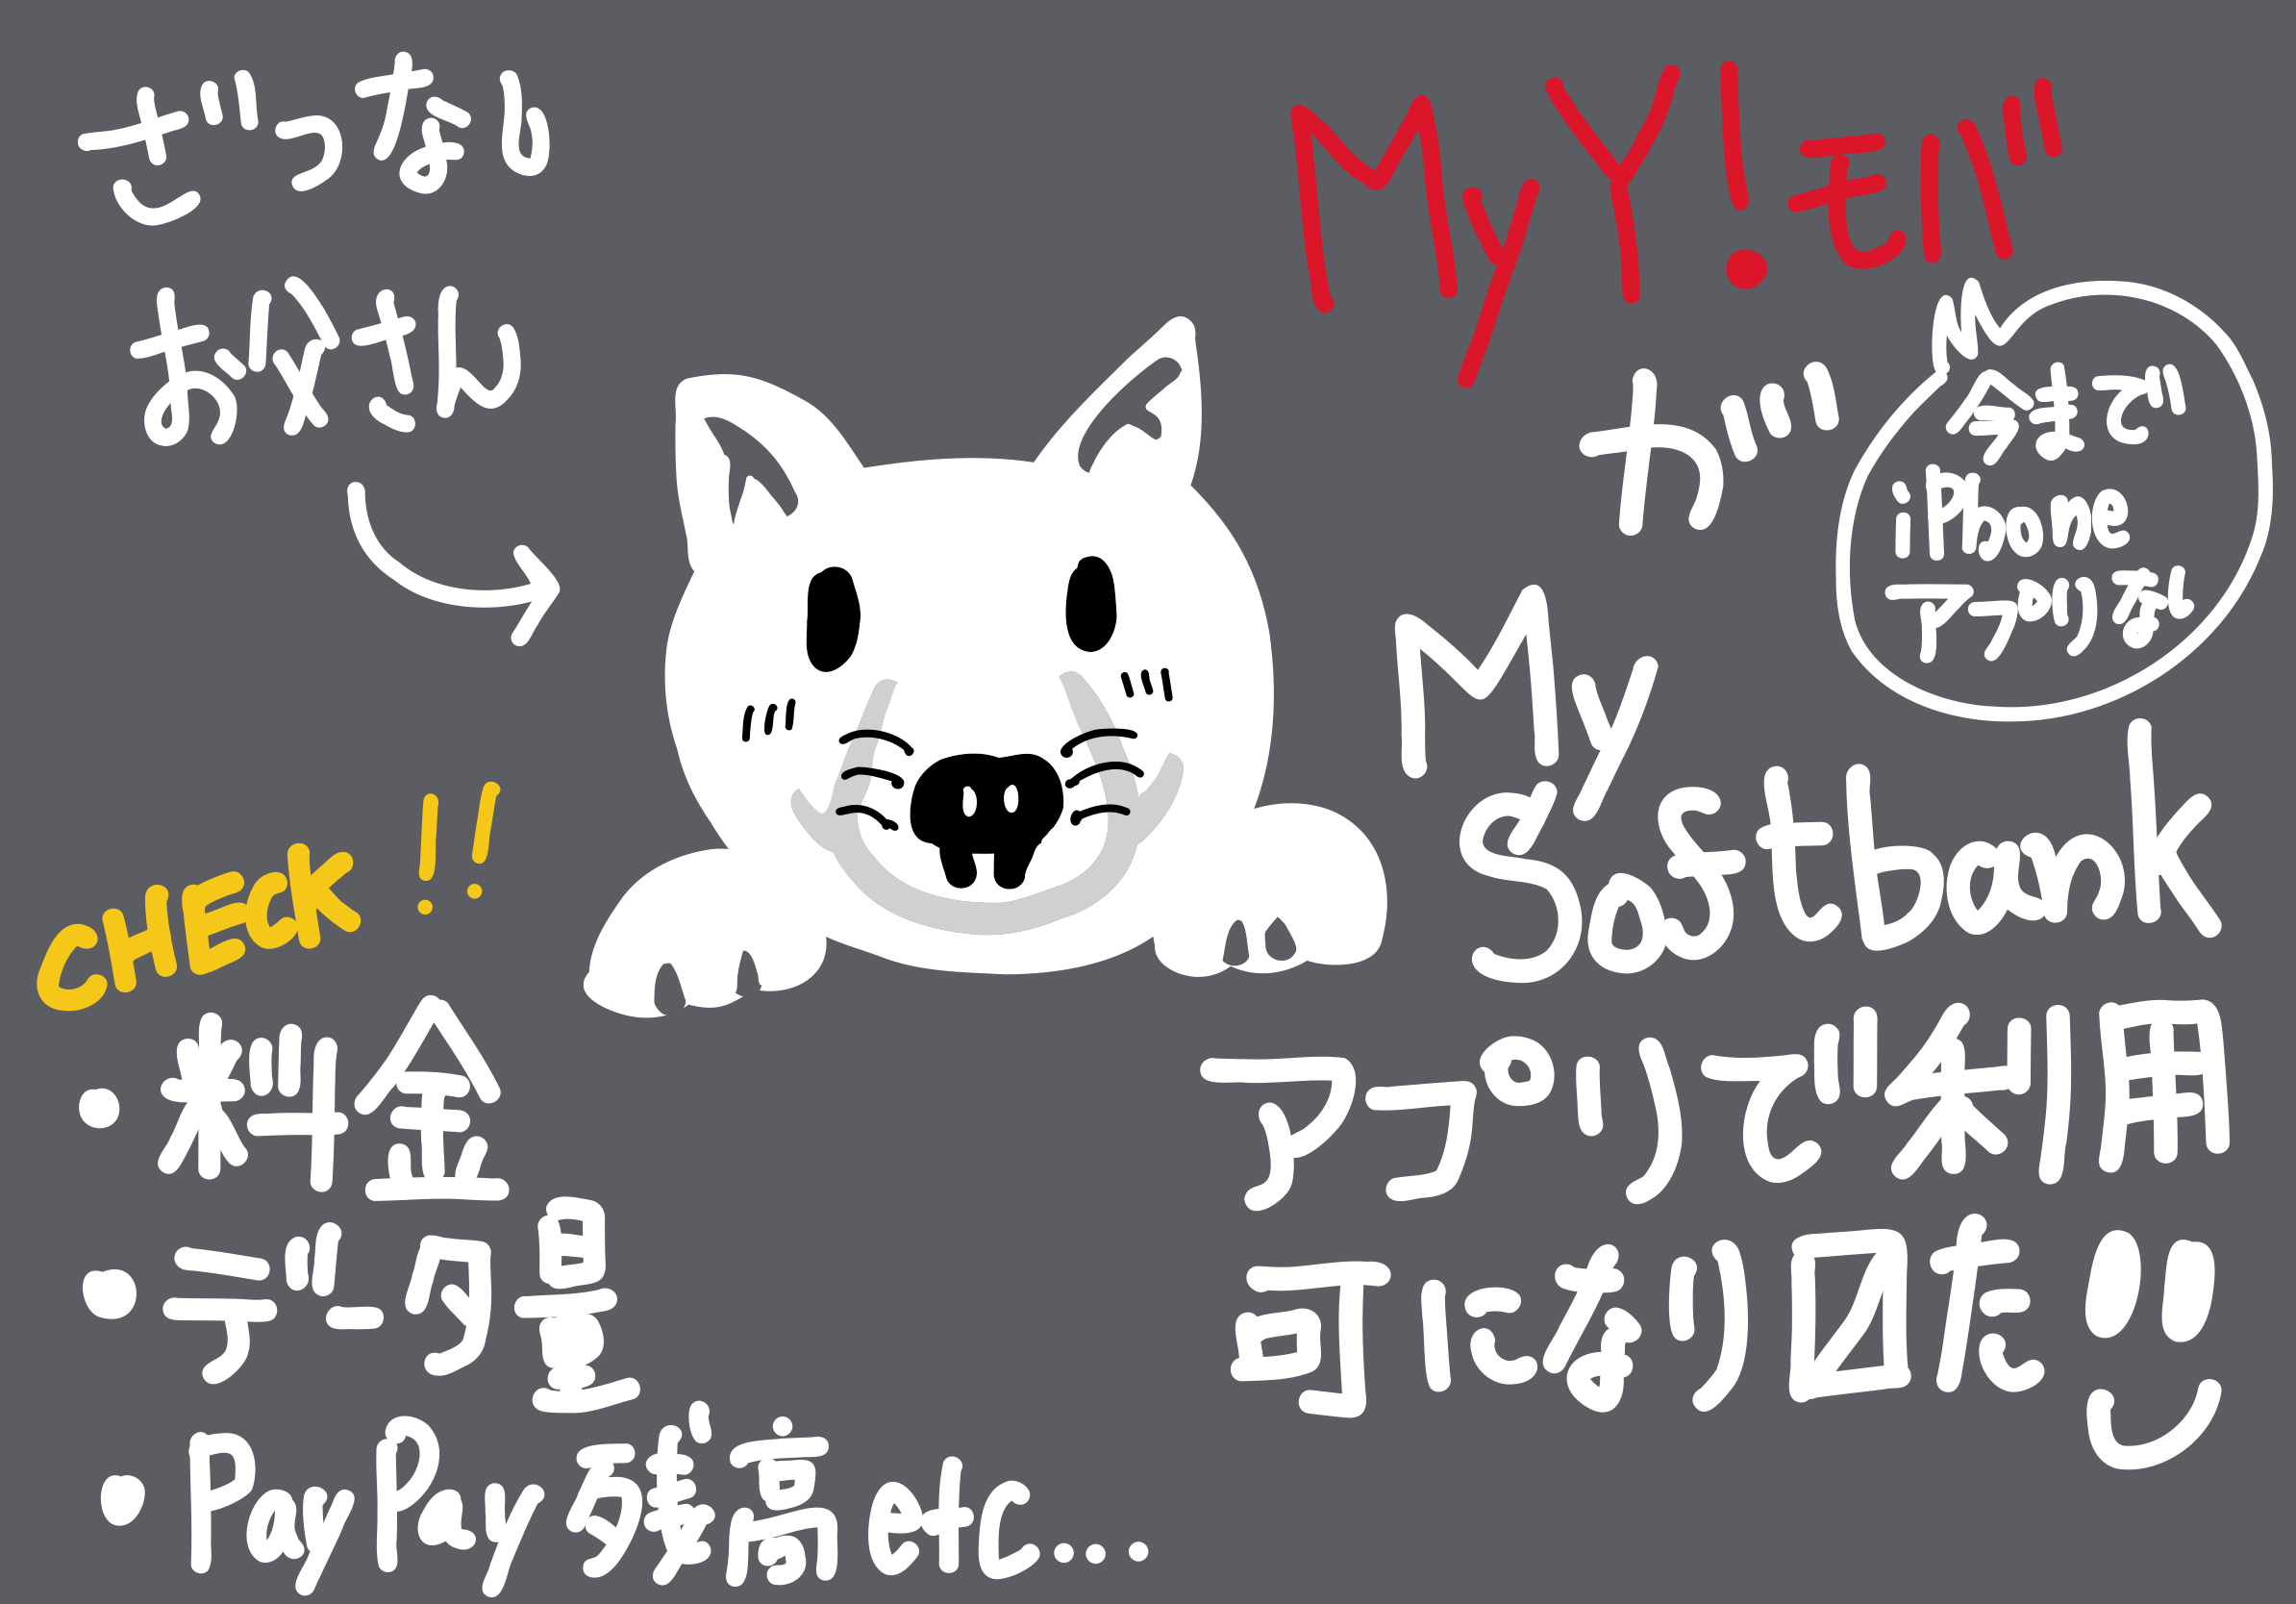 My Y!モバイル が My Softbank アプリに統合されたよ!